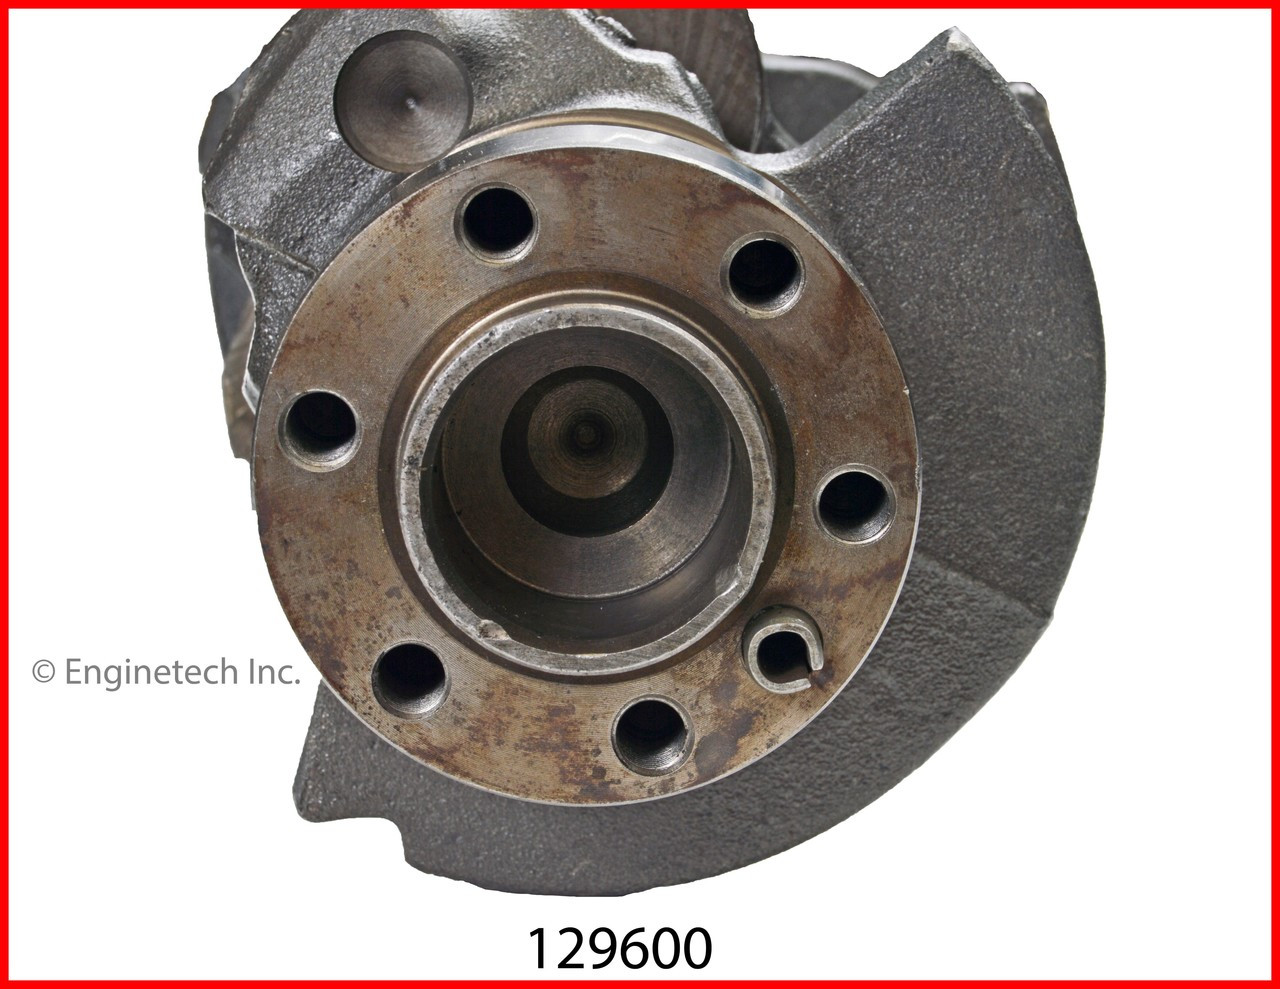 Crankshaft Kit - 2002 GMC Sonoma 4.3L (129600.H75)